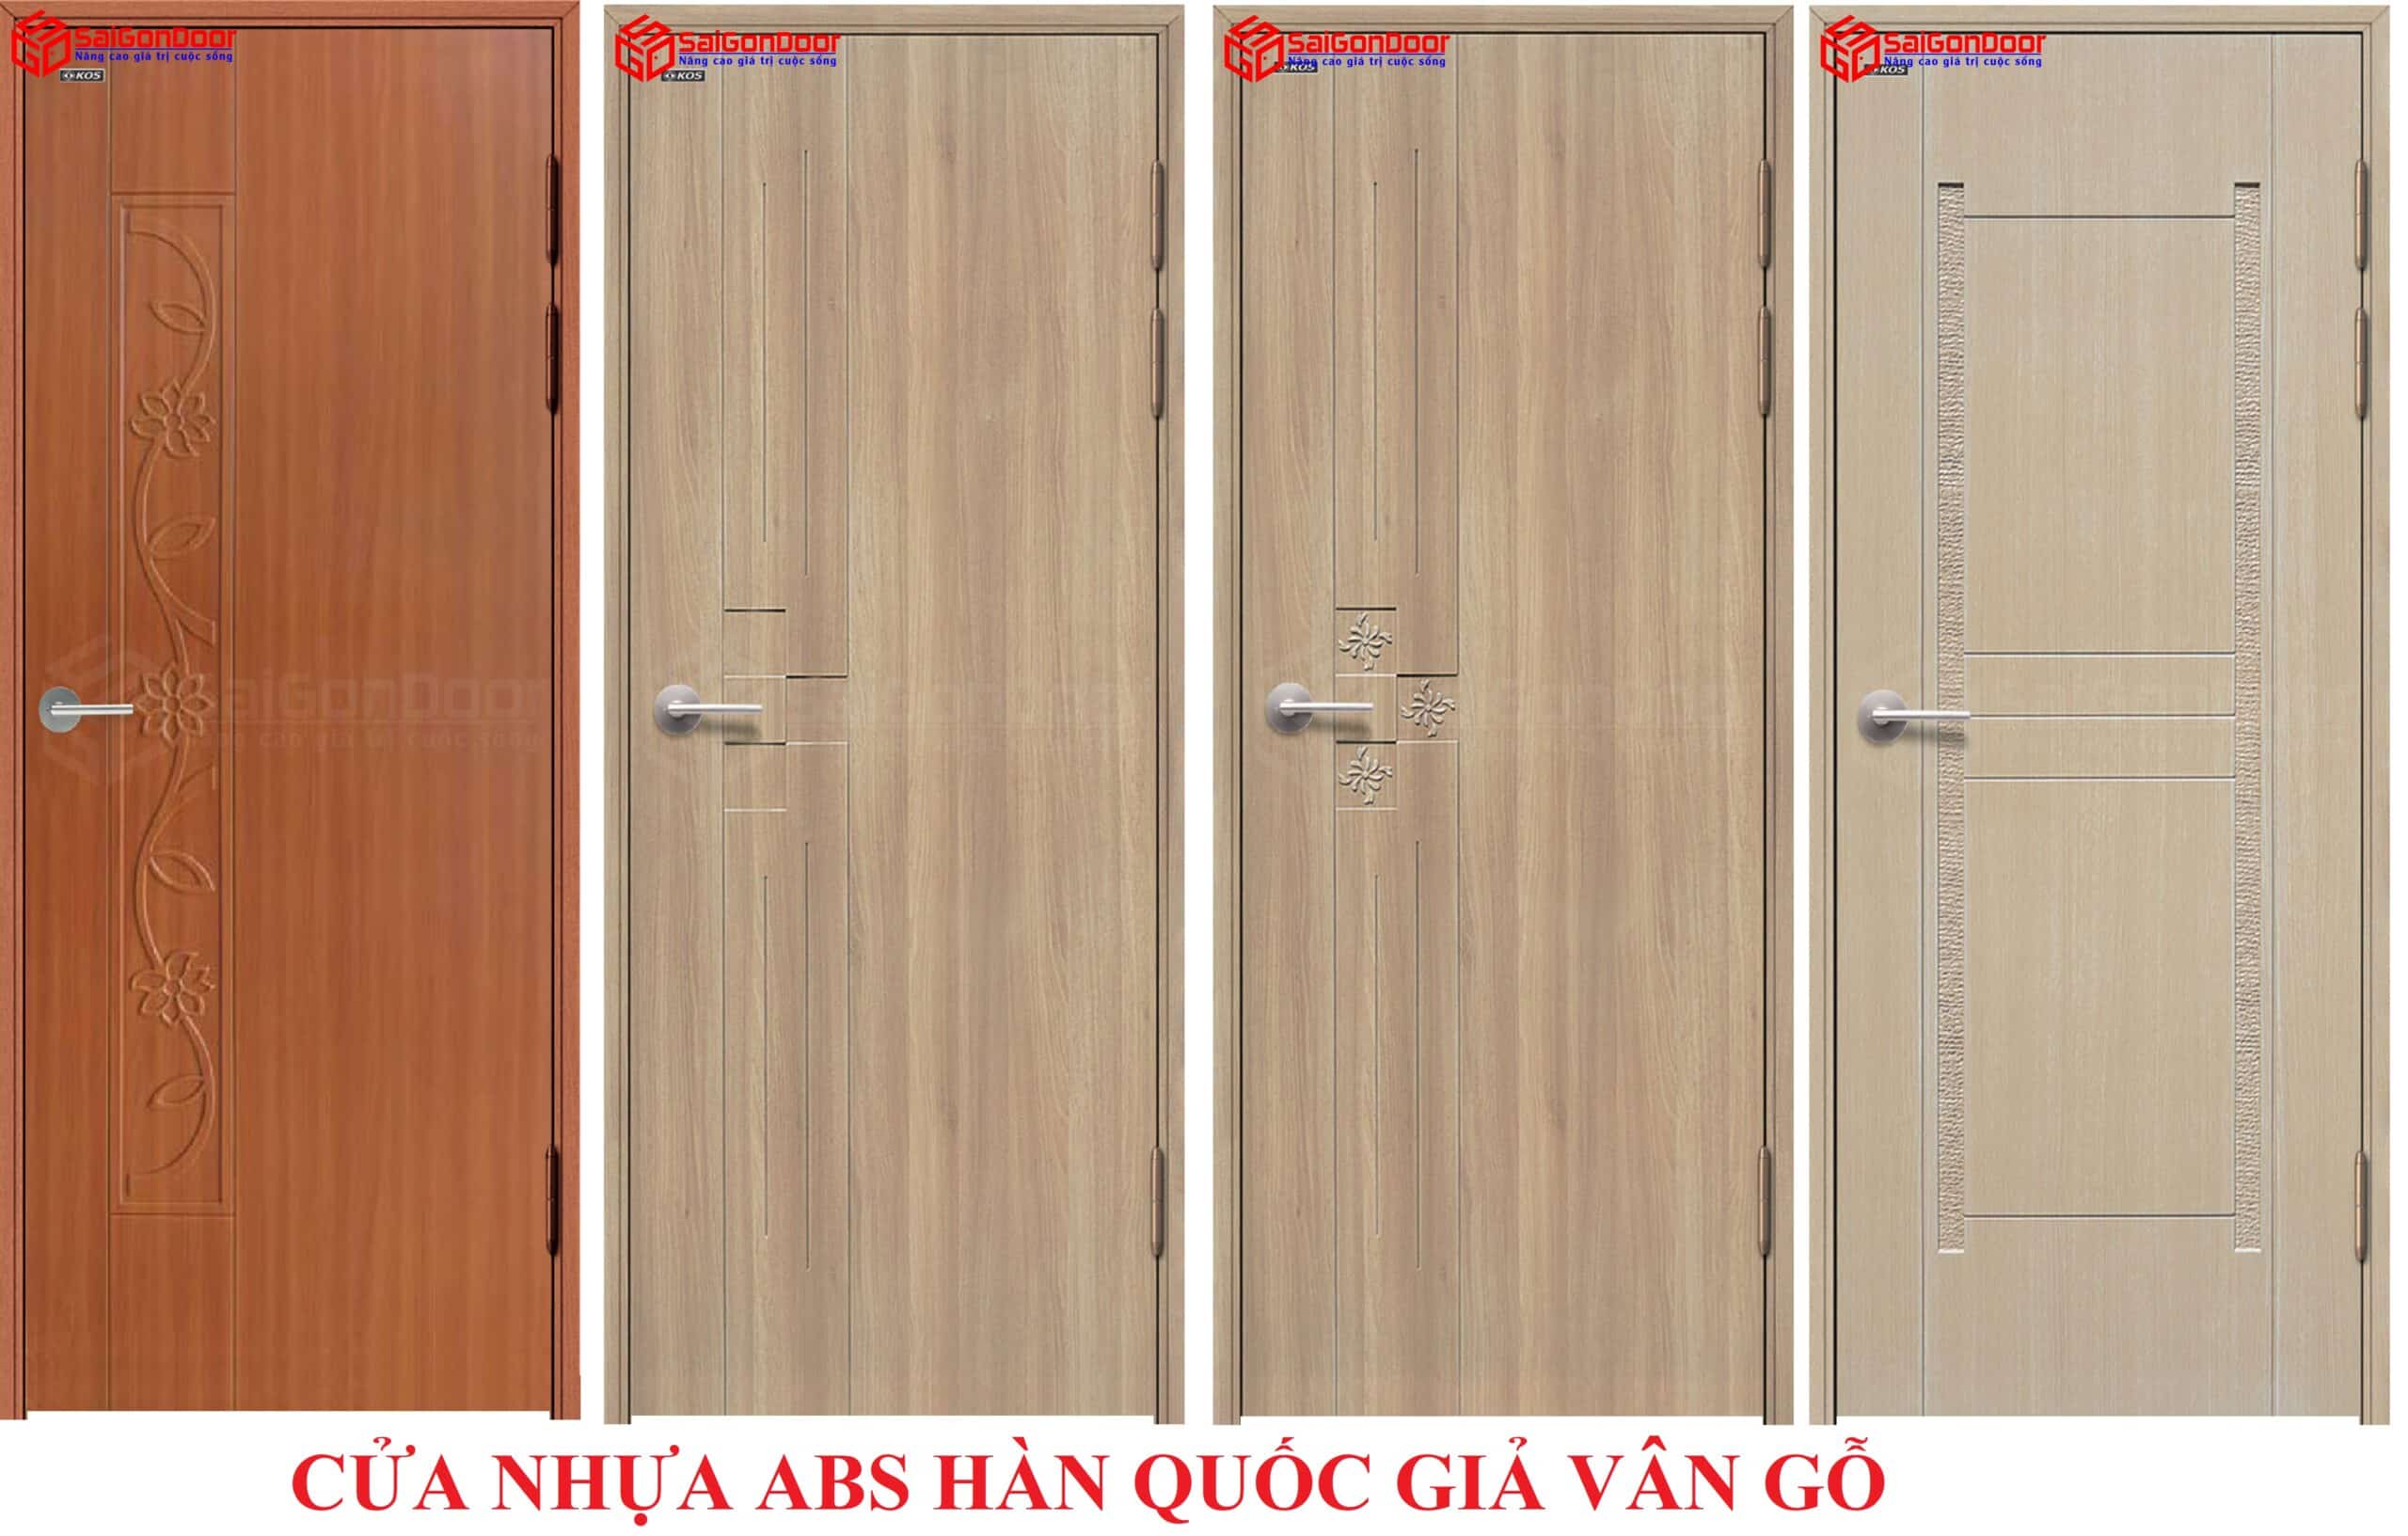 Đa dạng mẫu cửa nhựa gỗ composite đẹp tại SaigonDoor